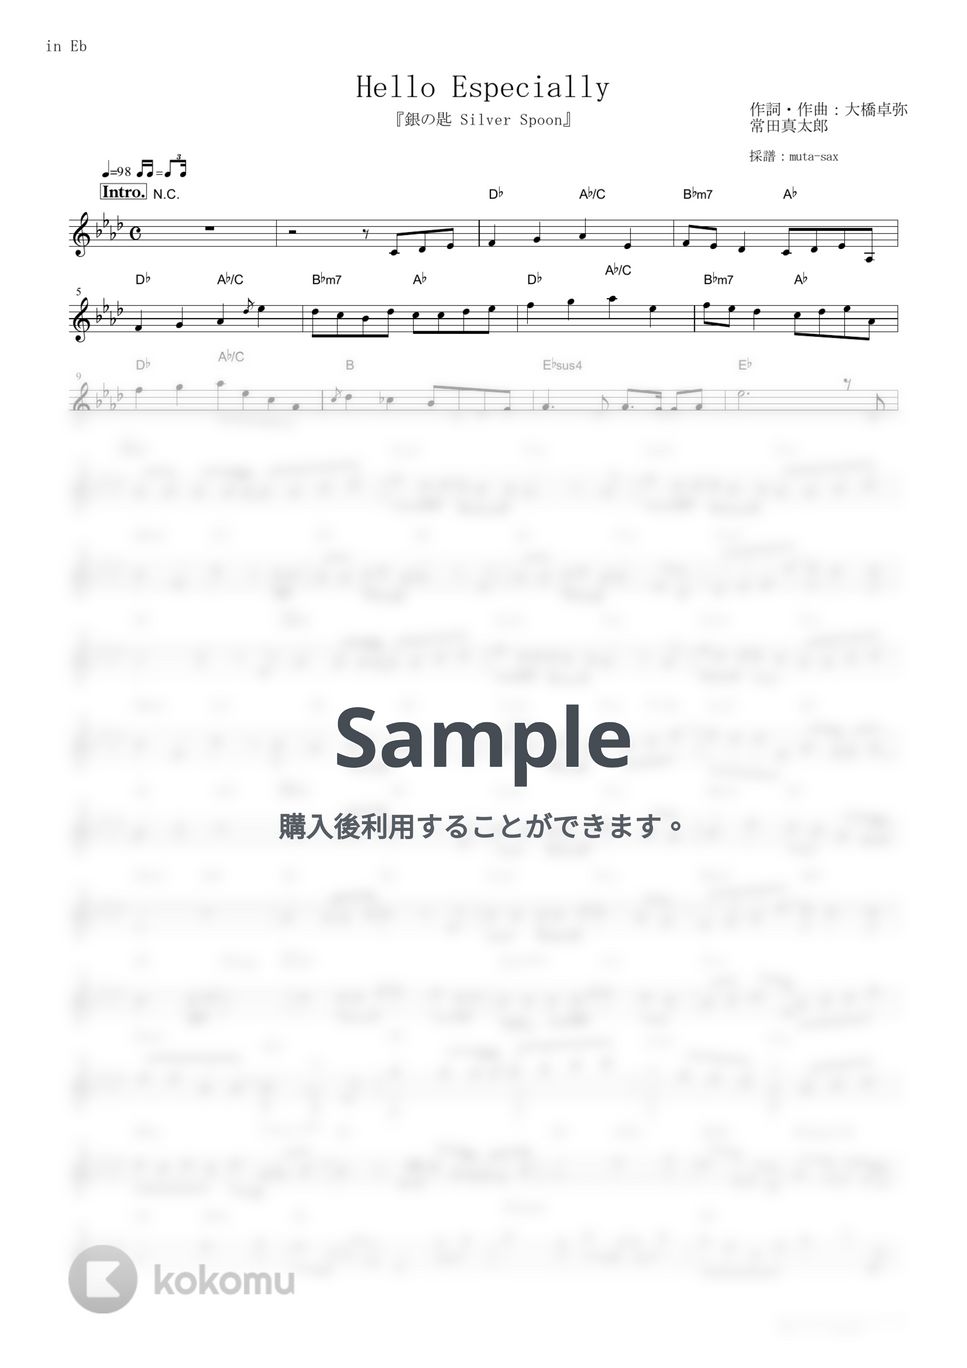 スキマスイッチ - Hello Especially (『銀の匙 Silver Spoon』 / in Eb) by muta-sax